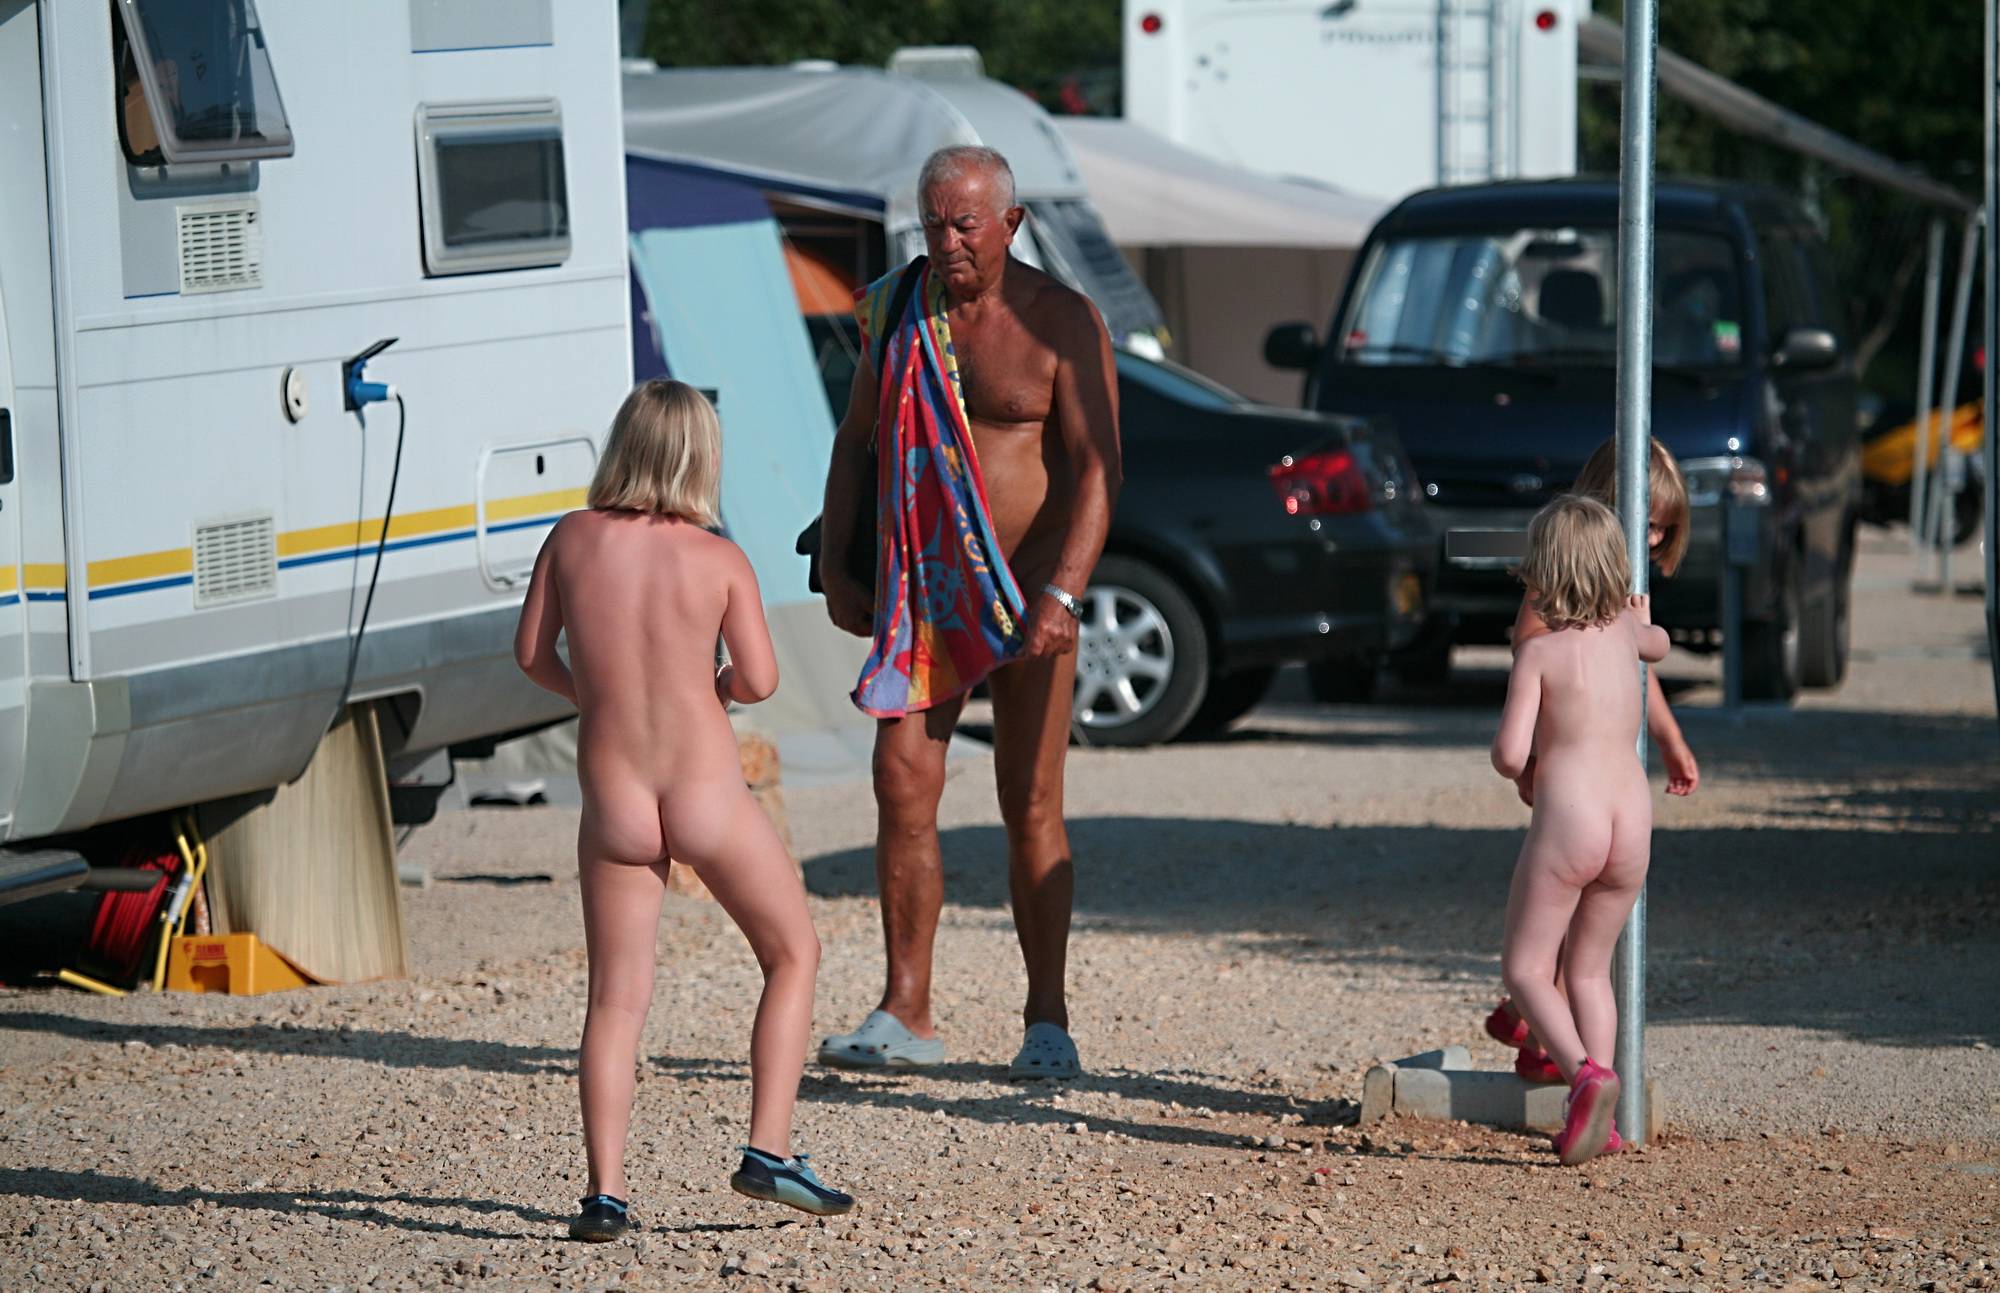 Purenudism Pics Three Nudist Kids By RV - 2